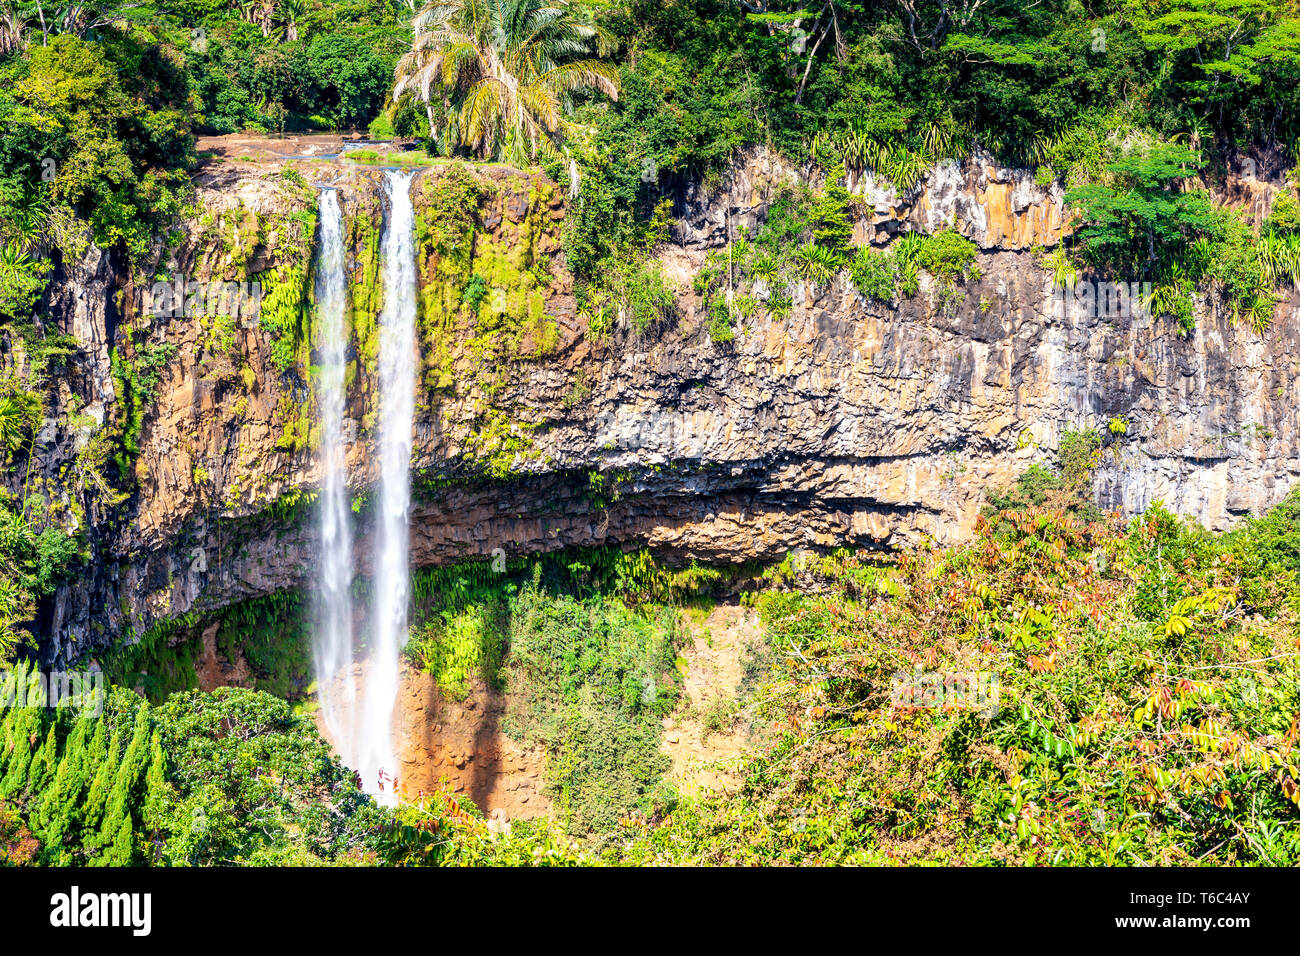 La cascada de Chamarel. Chamarel, Río Negro (Riviere Noir), Mauricio, África Foto de stock